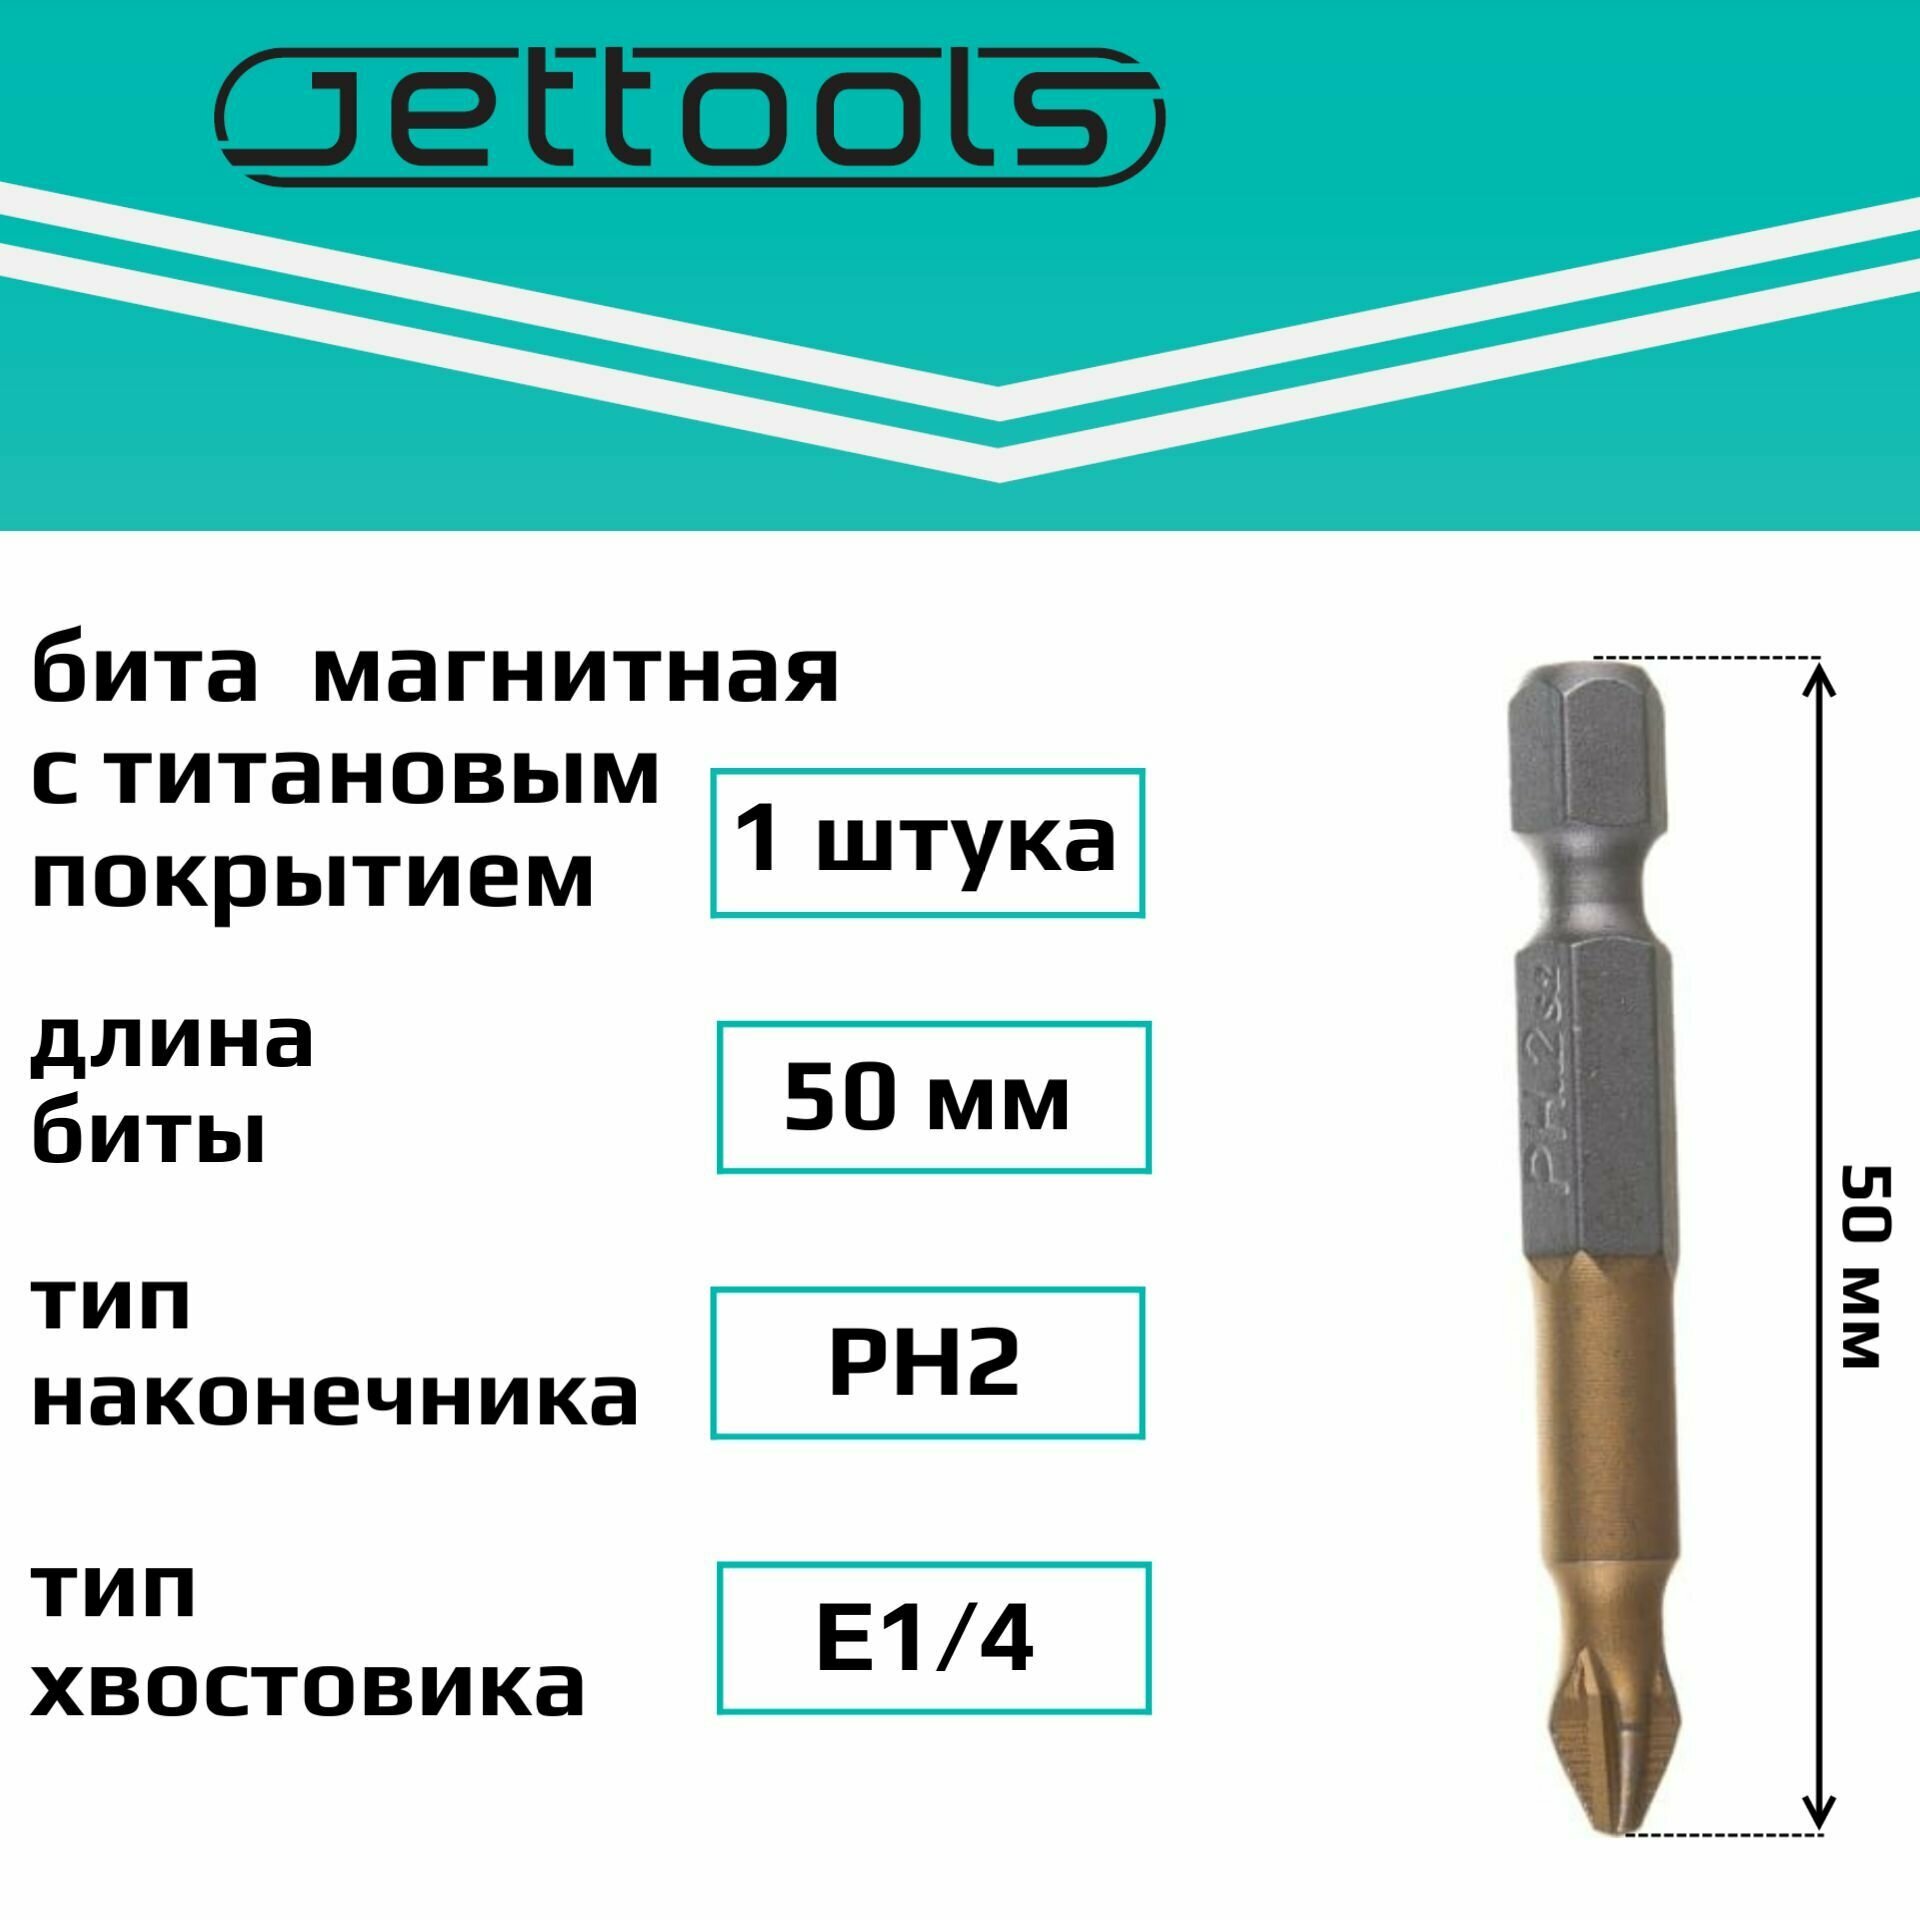 Биты 50PH2 Jettools с покрытием TiN-Half магнитные для больших нагрузок